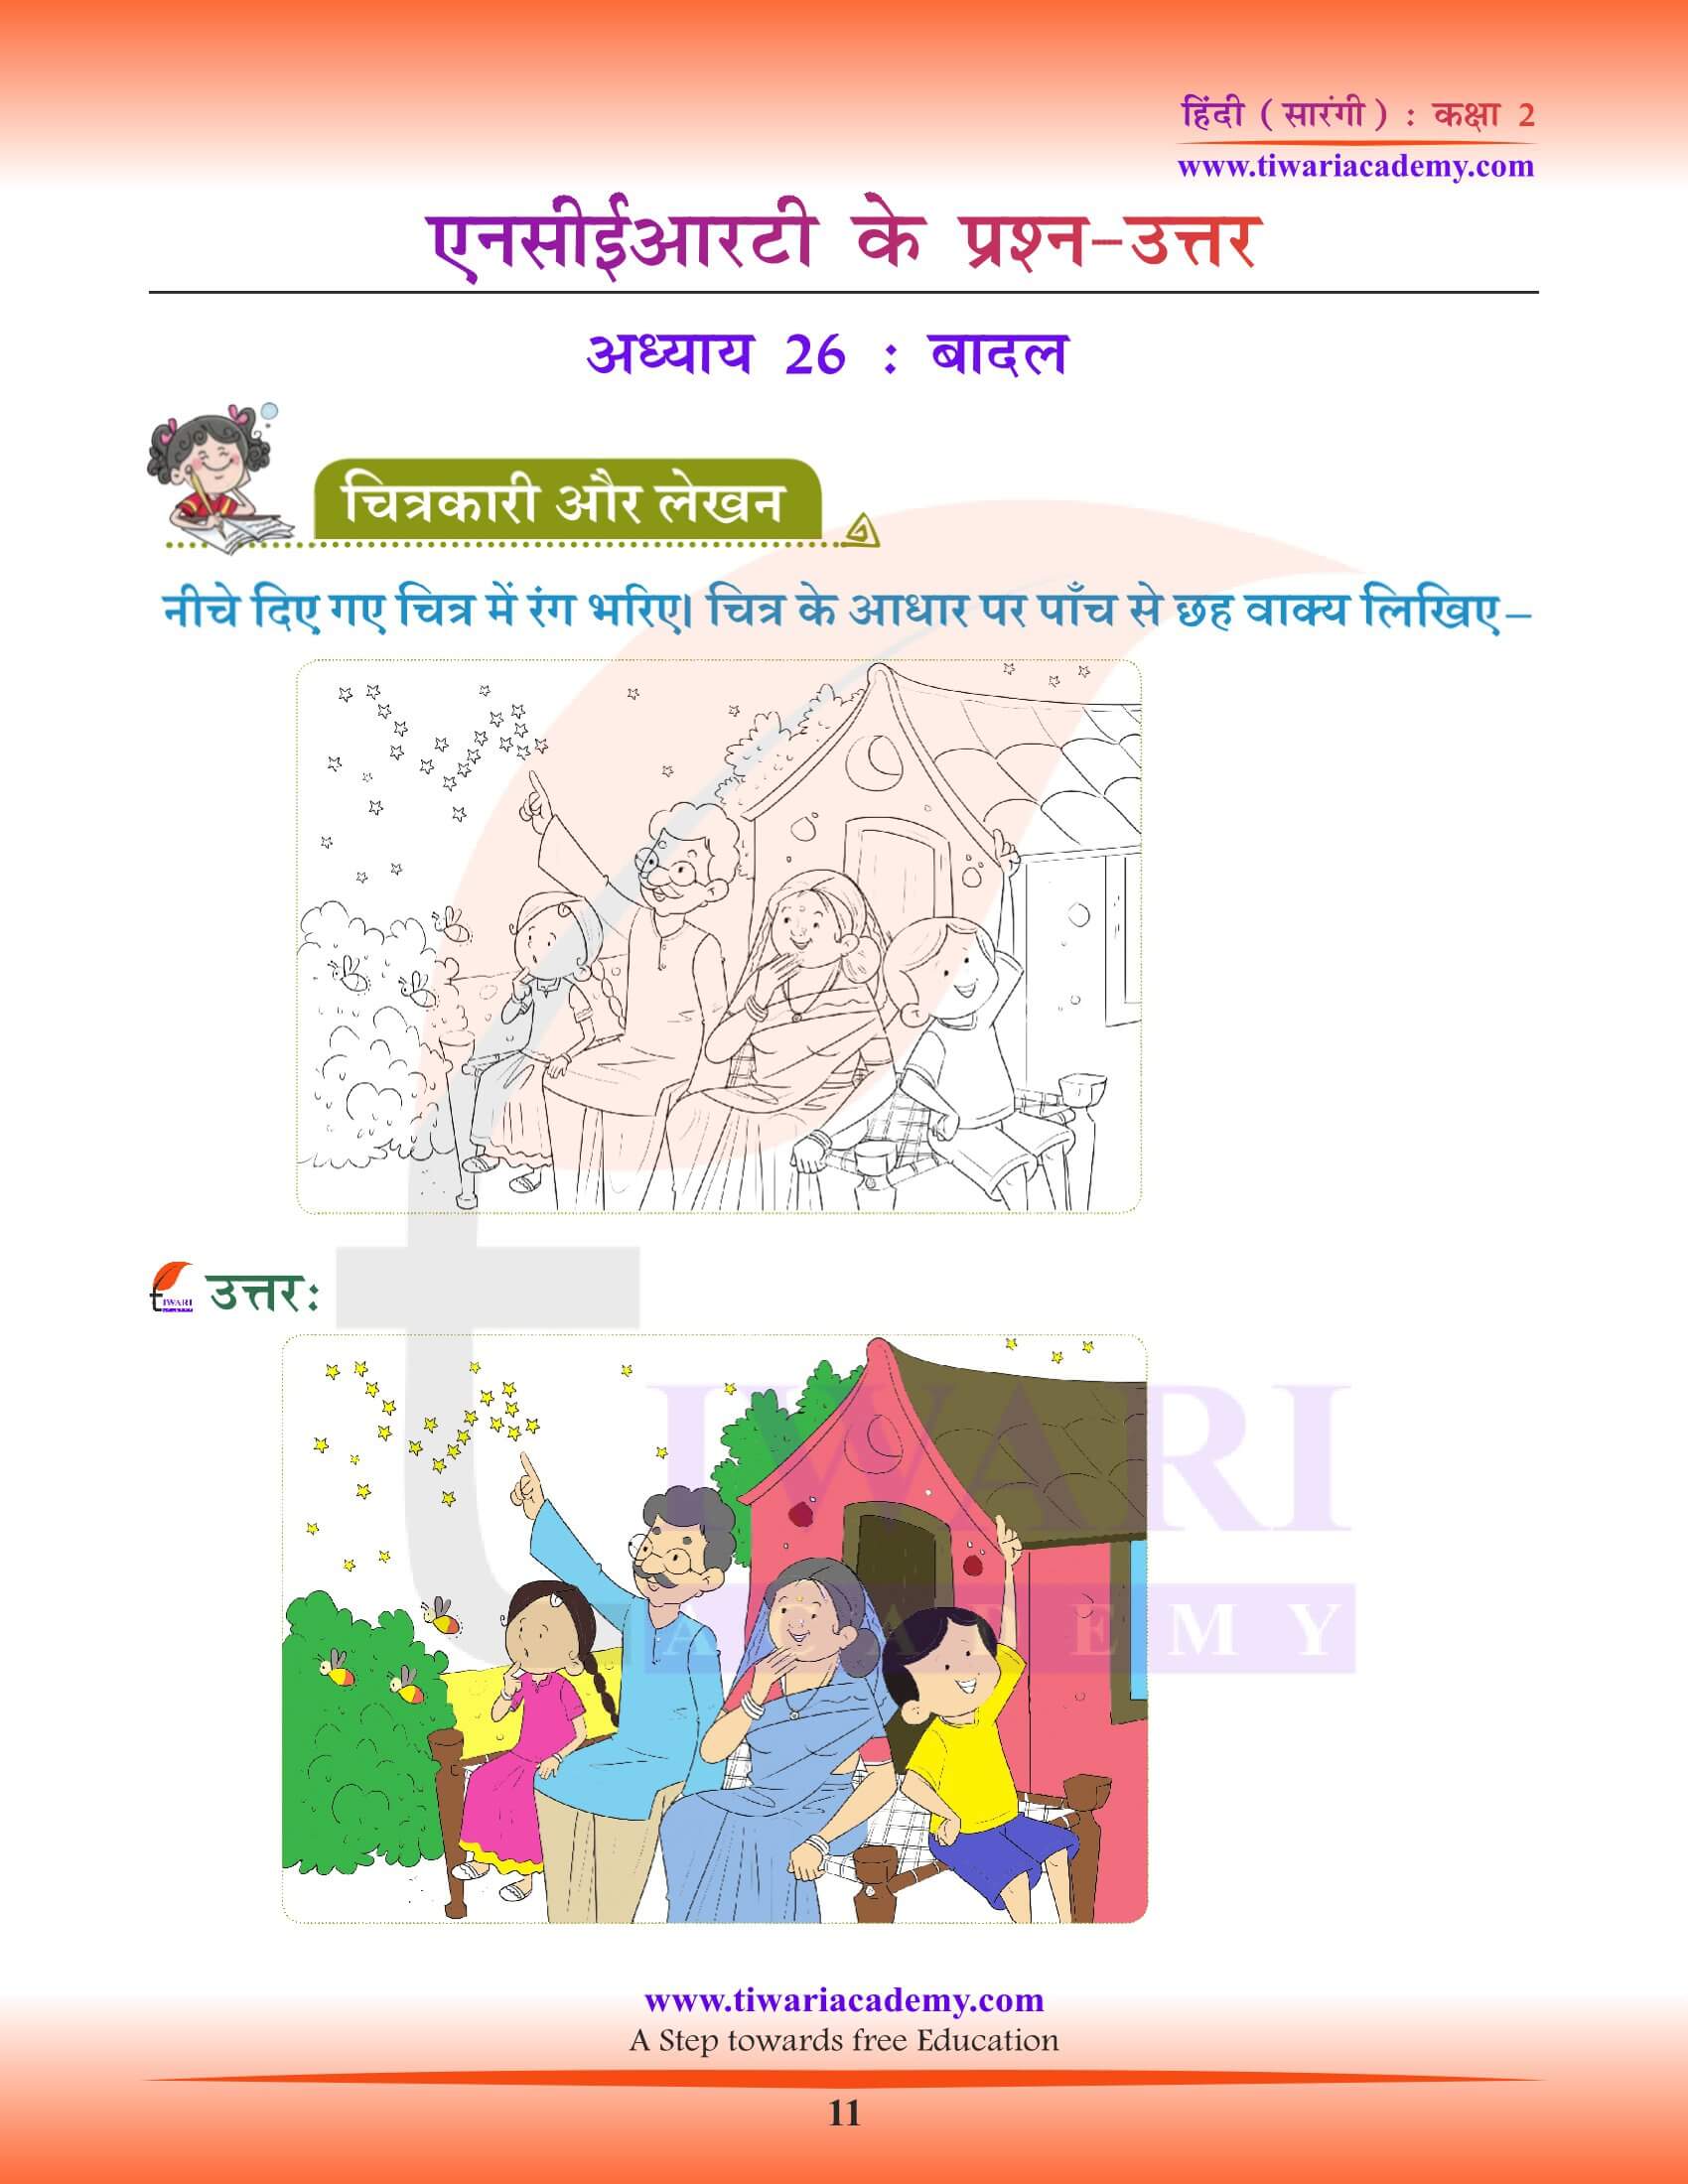 कक्षा 2 हिंदी सारंगी अध्याय 26 की पिक्चर